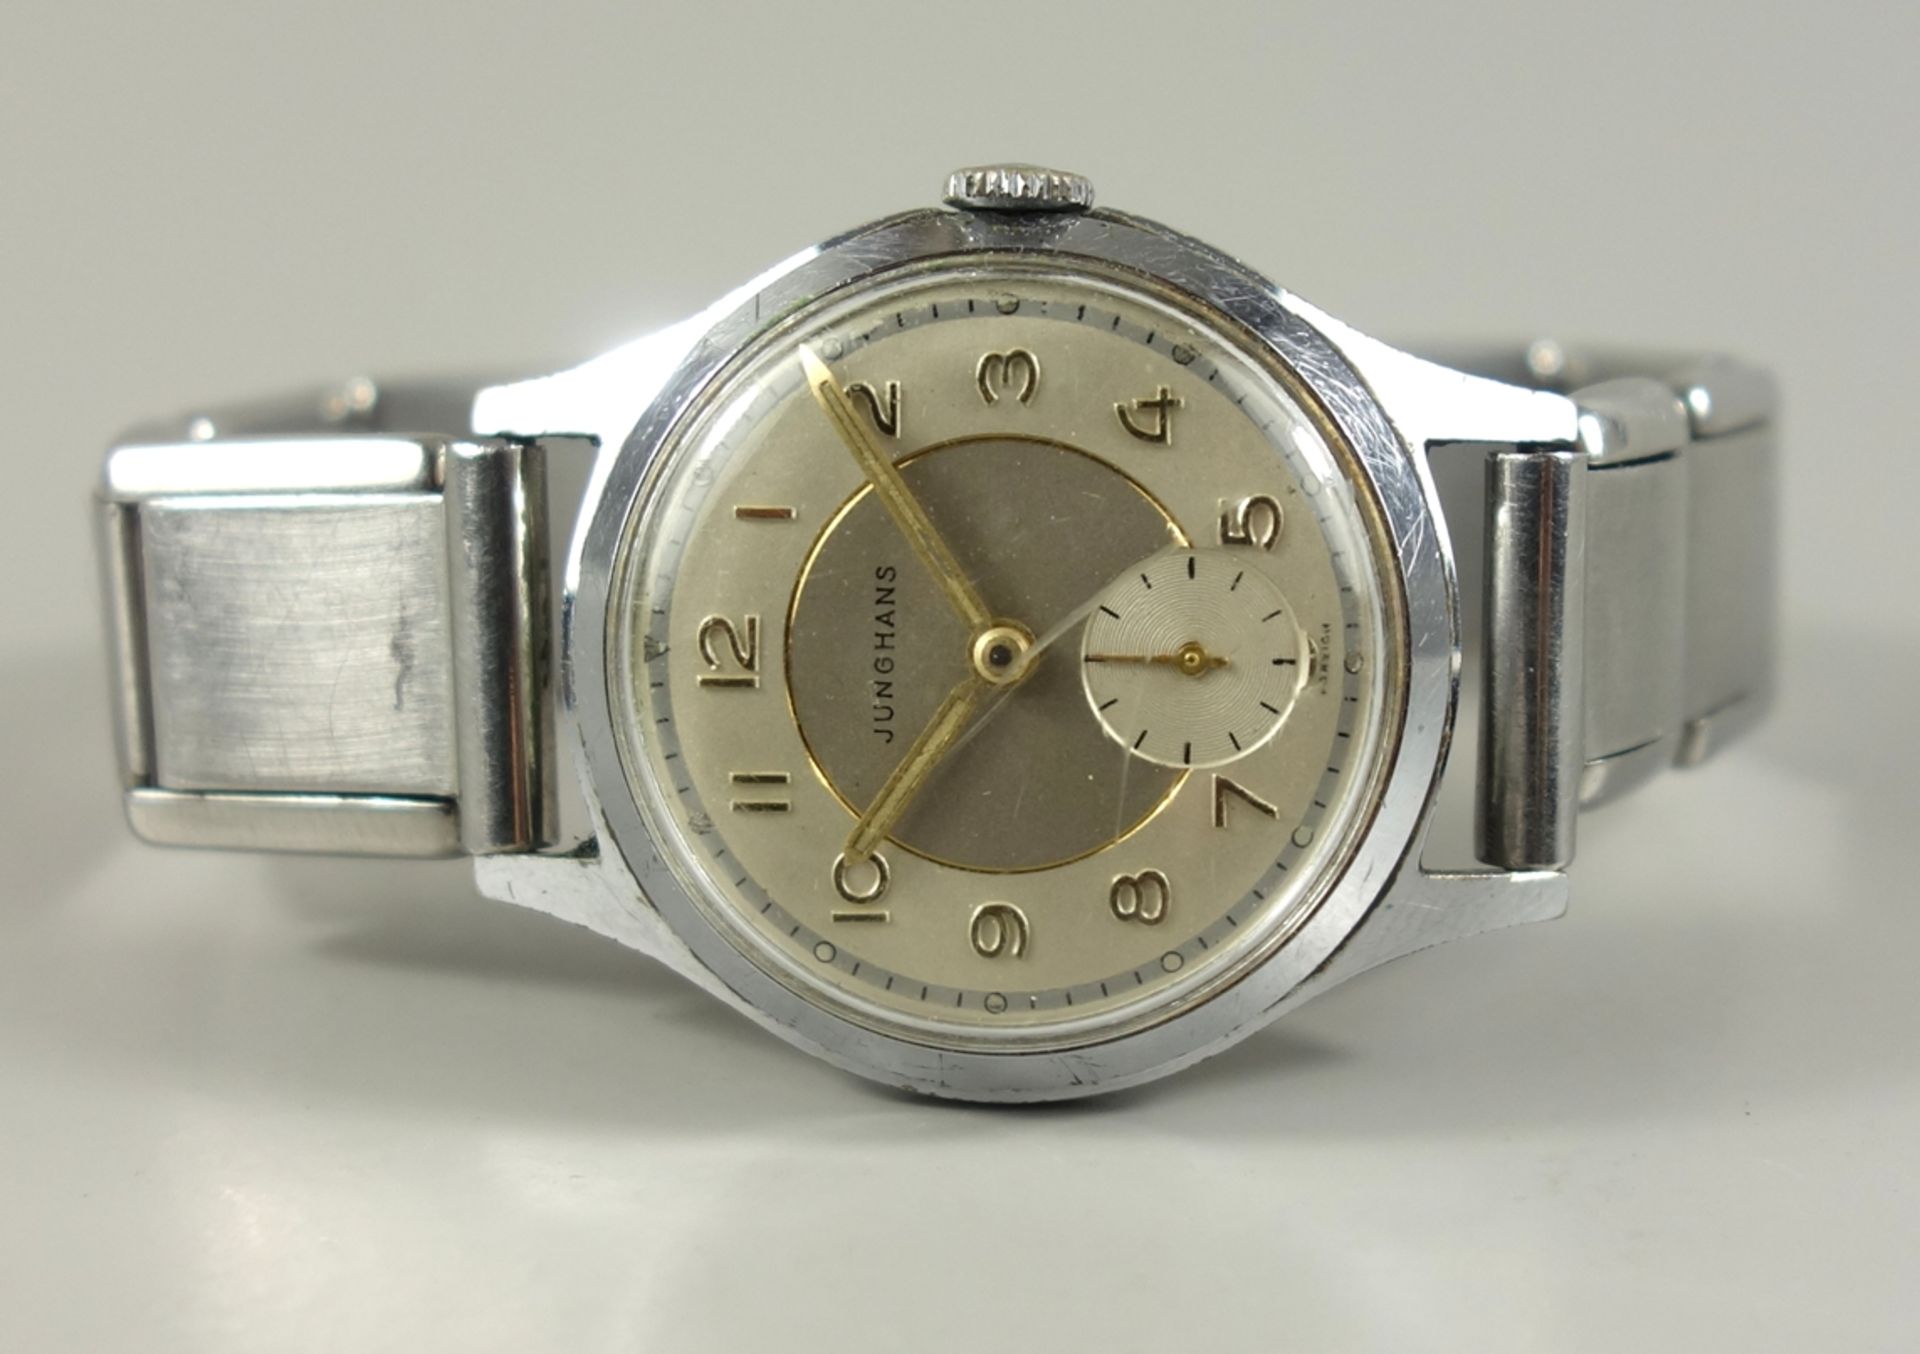 Armbanduhr Junghans, 1950er/1960er Jahre, vernickeltes Gehäuse, D.32mm, mechanisches Werk mit